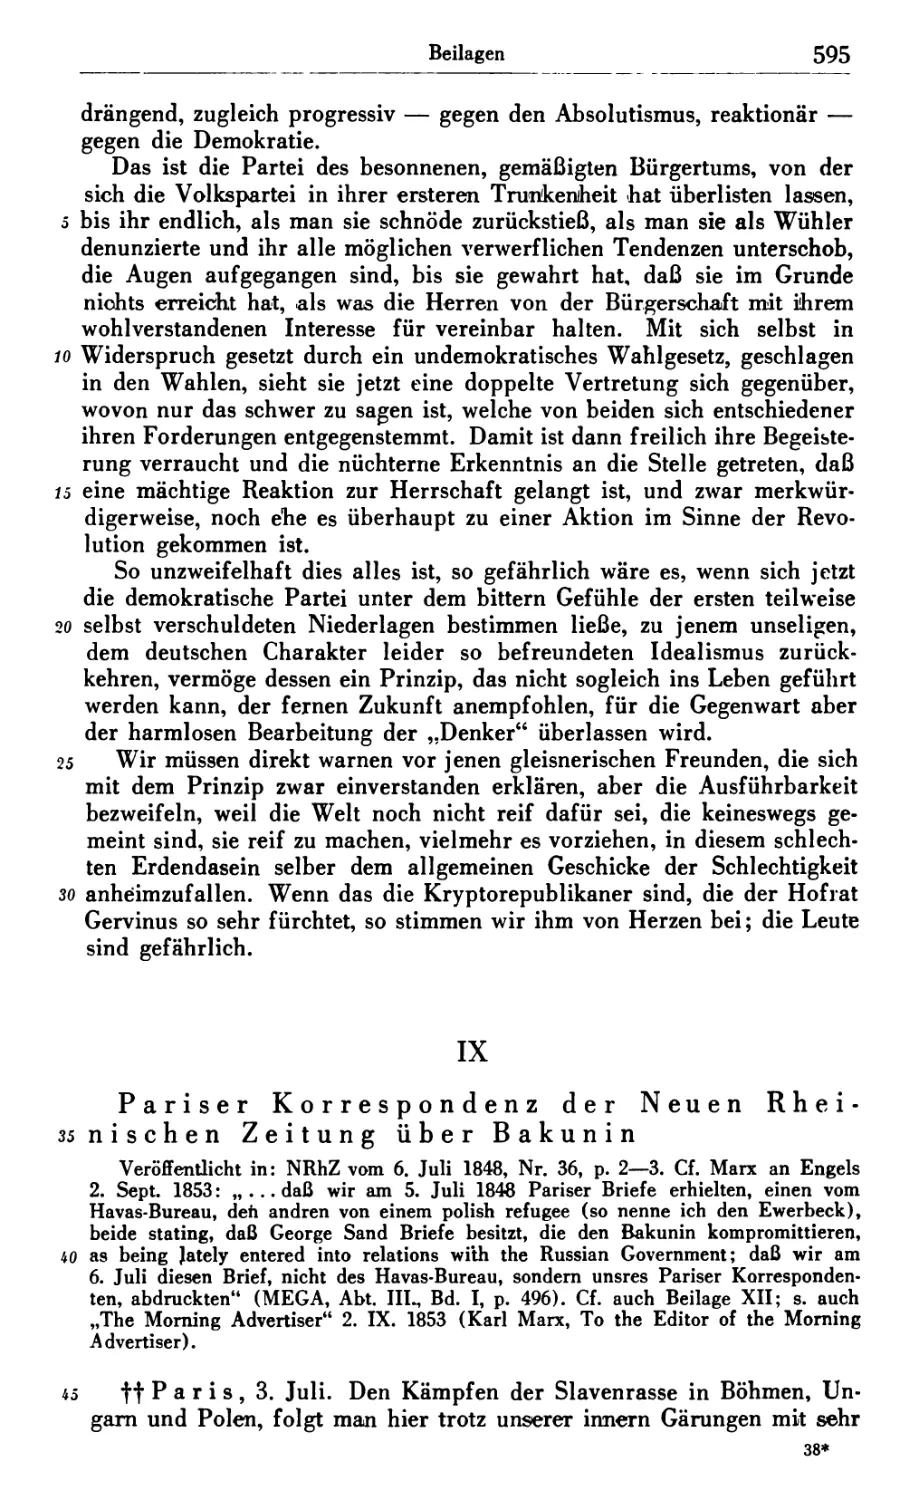 IX. Pariser Korrespondenz der Neuen Rheinischen Zeitung über Bakunin